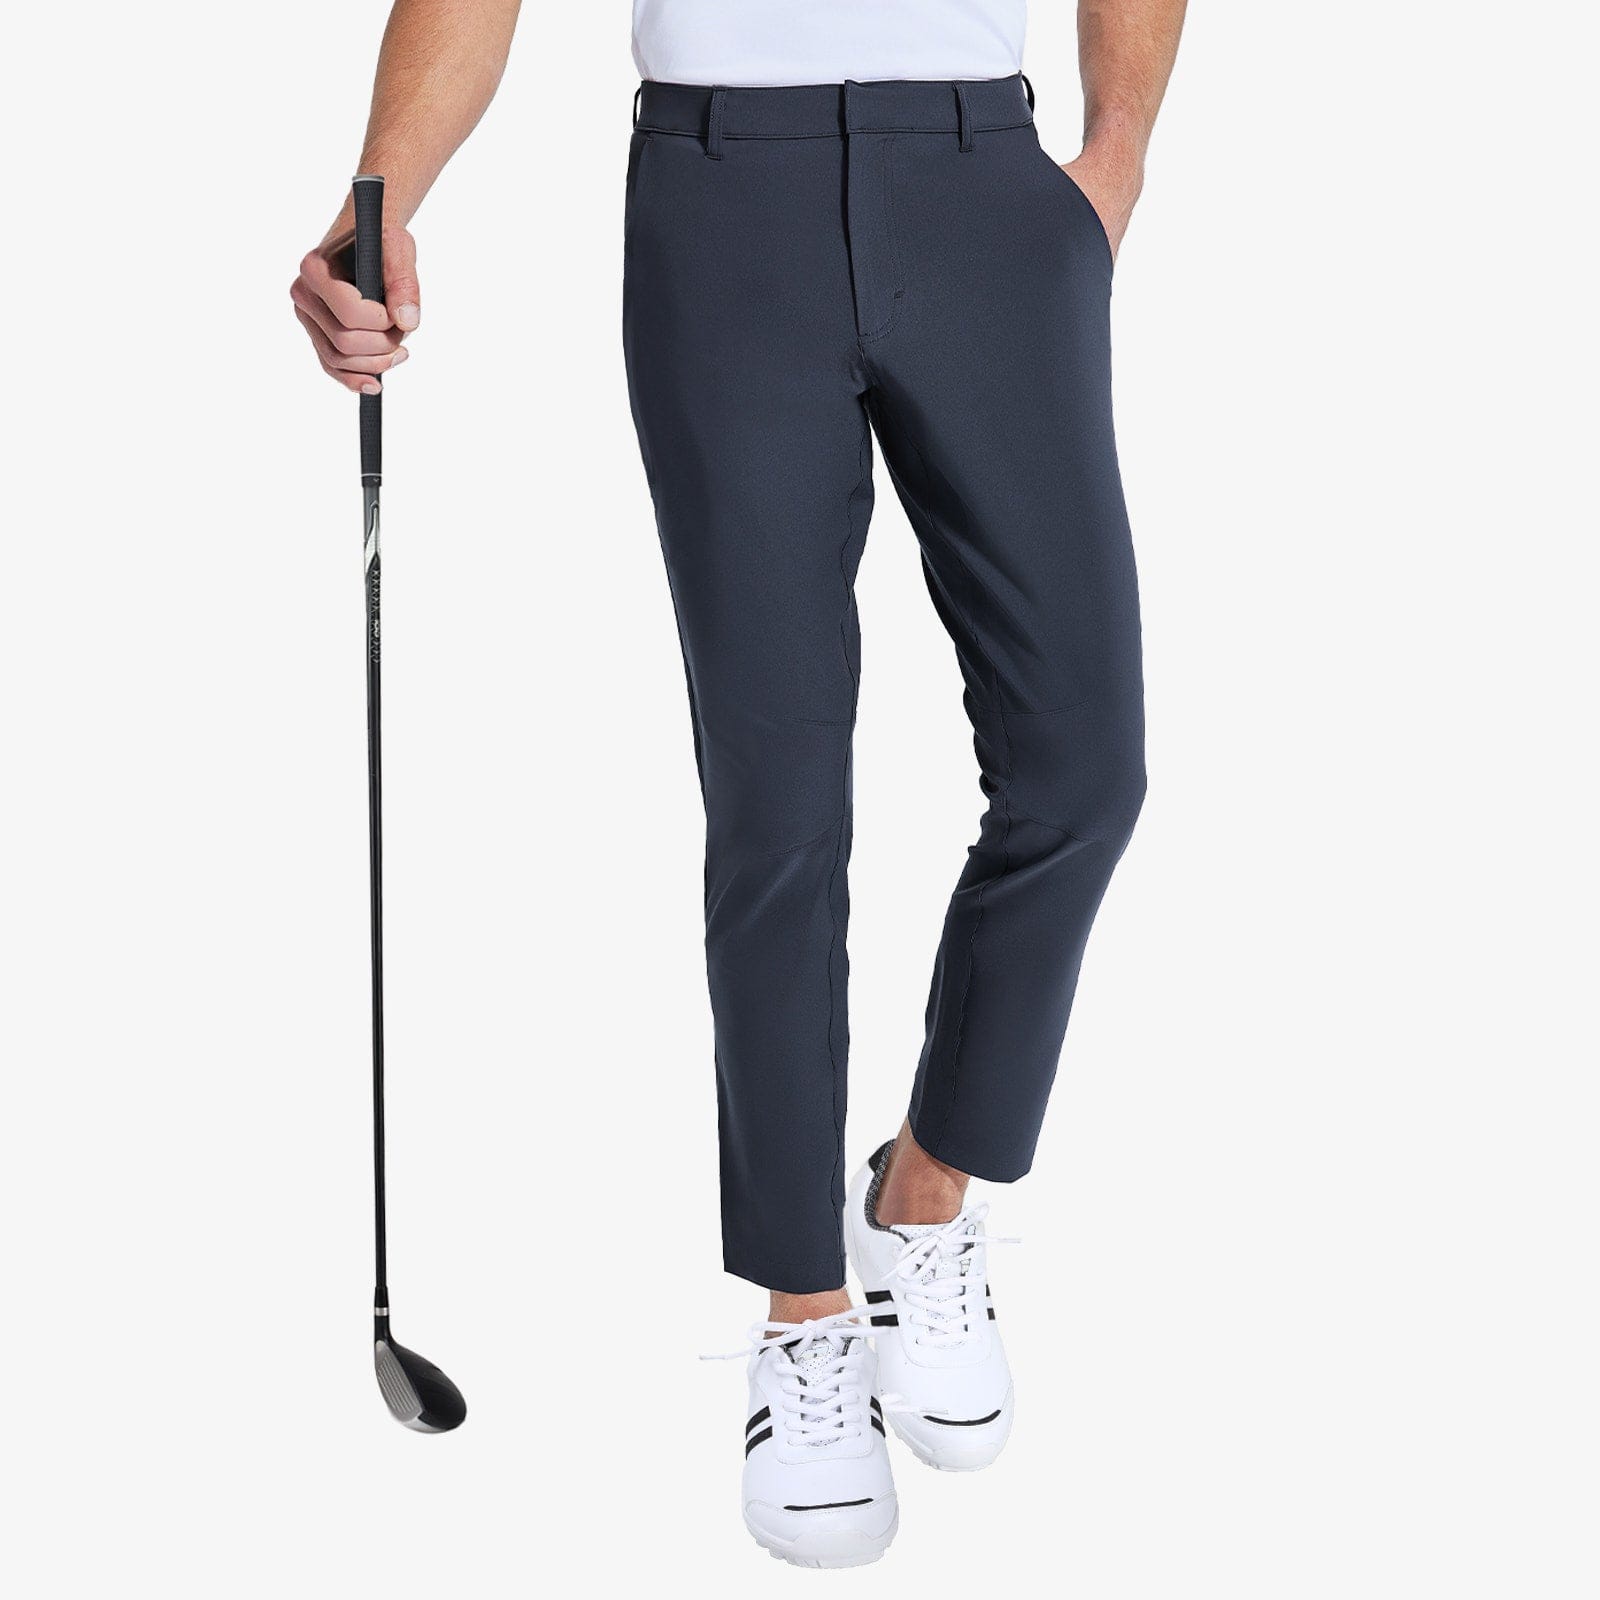 Men's Stretch Golf Pants Slim Fit Quick Dry Pants Men Train Pants Blue / S MIER